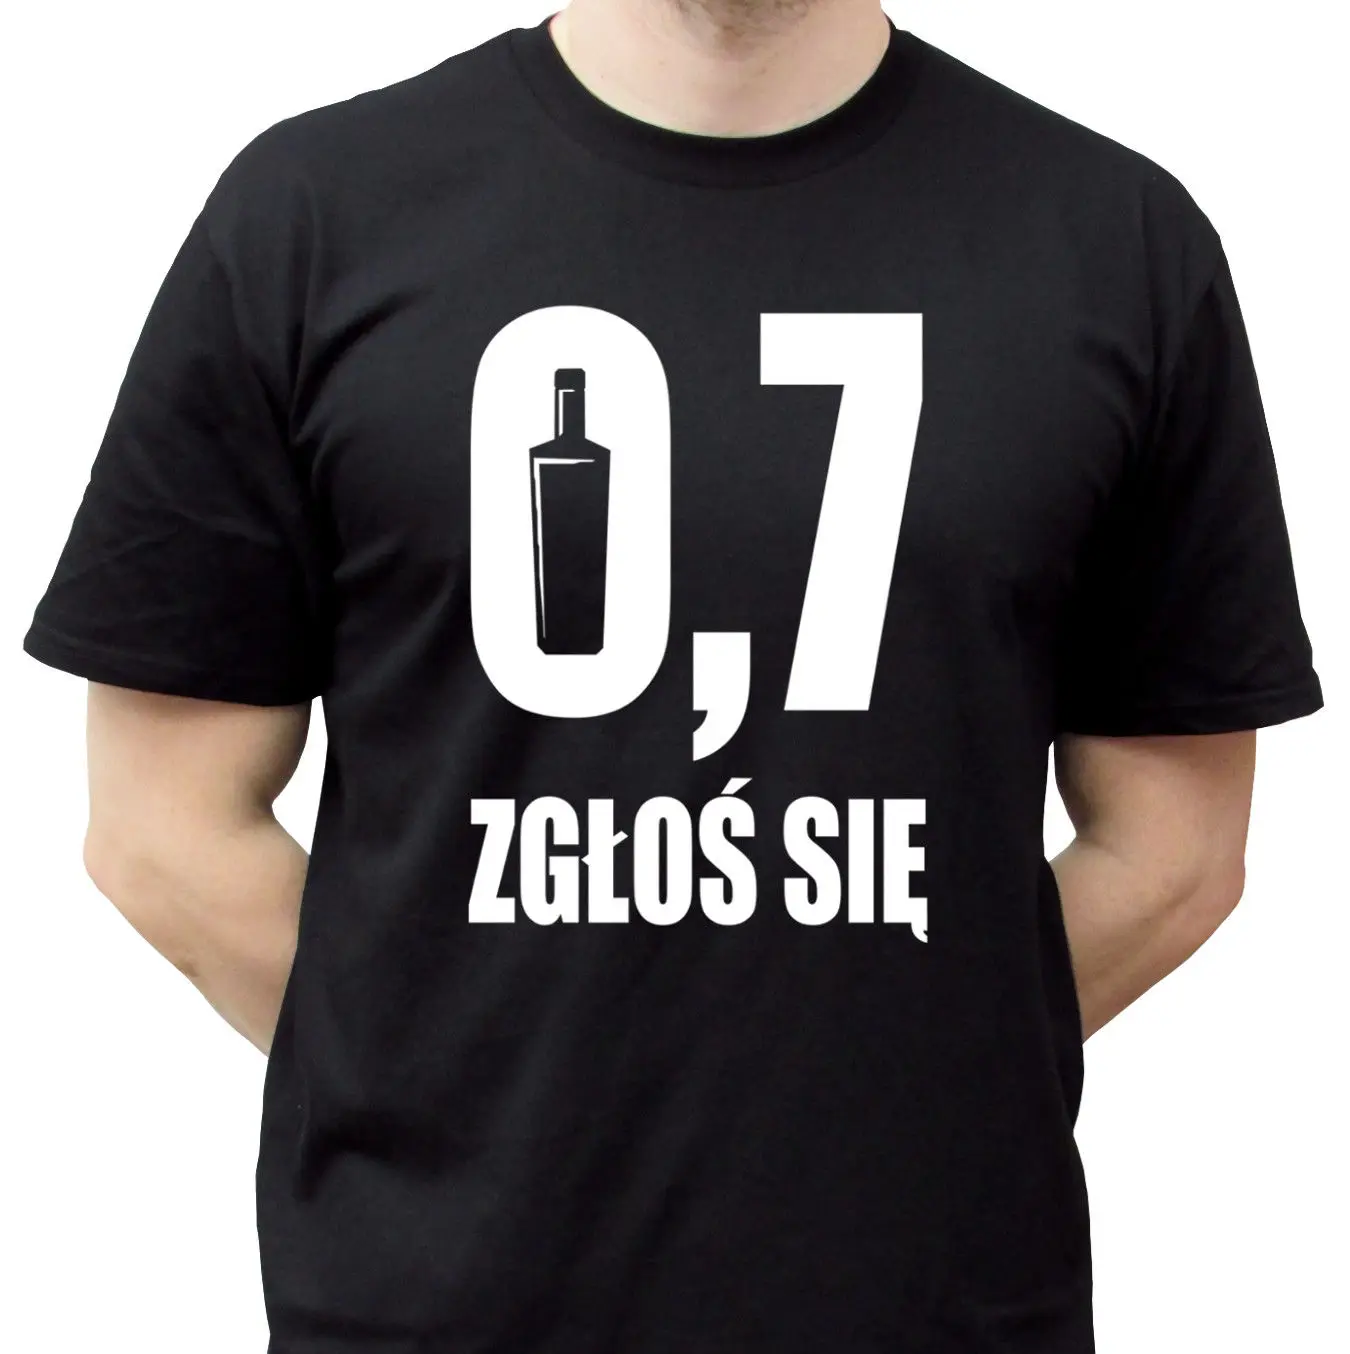 

07 czarna smieszna koszulka Polska alcohol funny tshirt smieszne koszulki poland